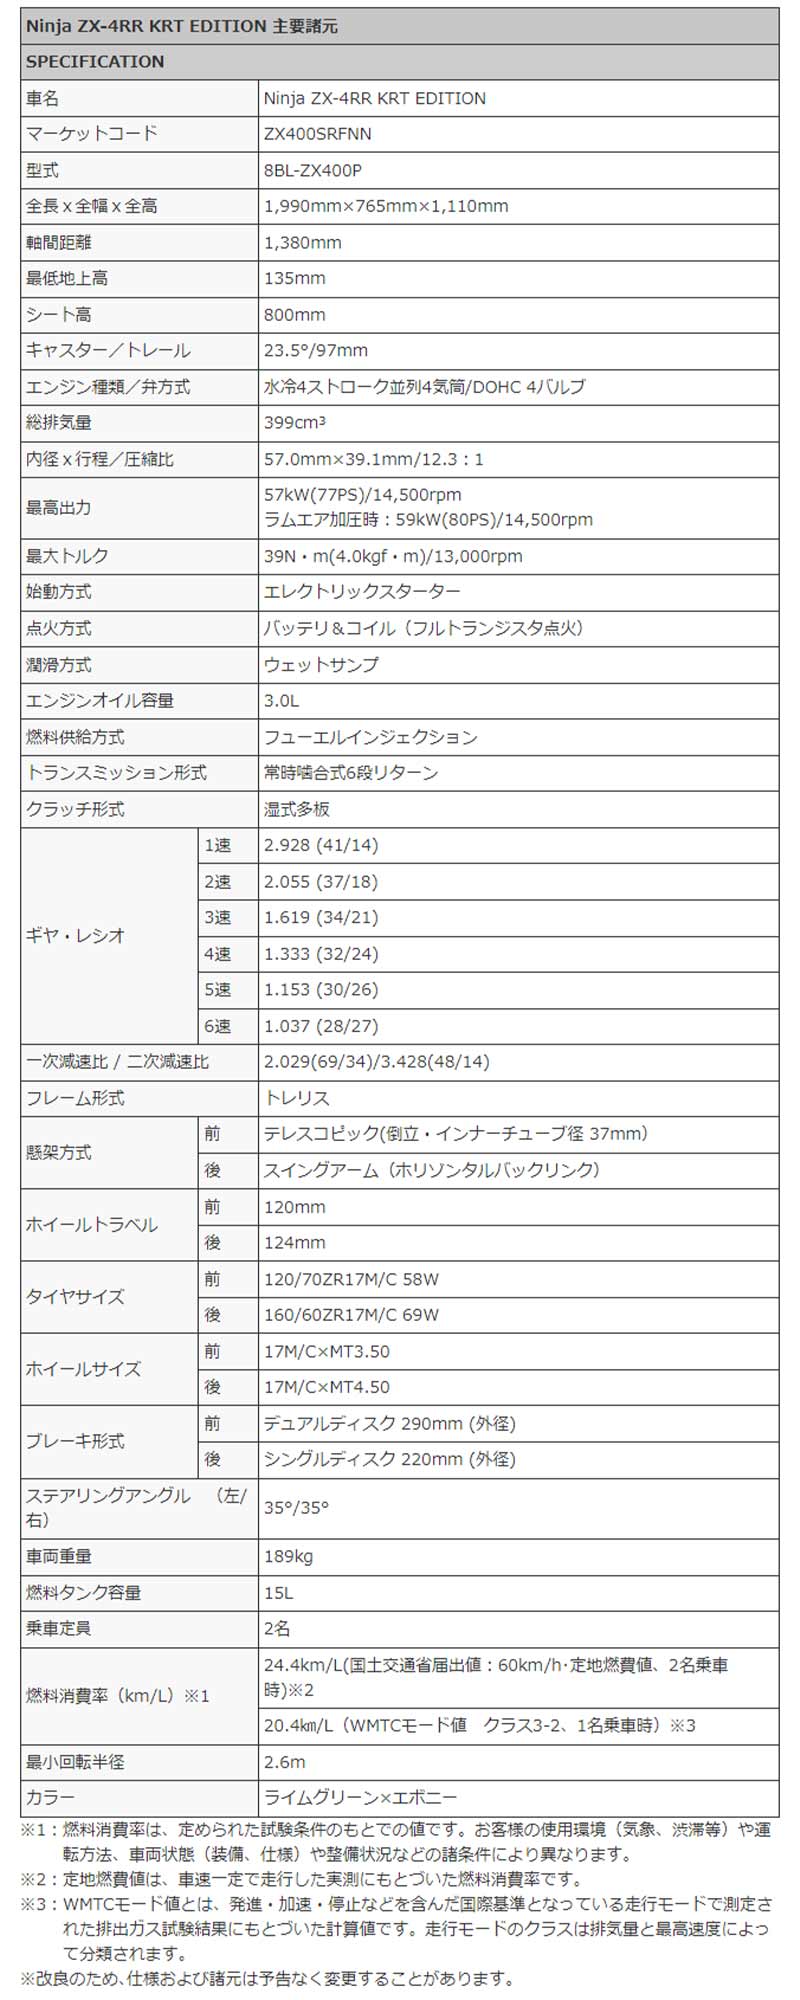 カワサキ「Ninja ZX-4R」シリーズの国内モデルが7/15発売　記事１１